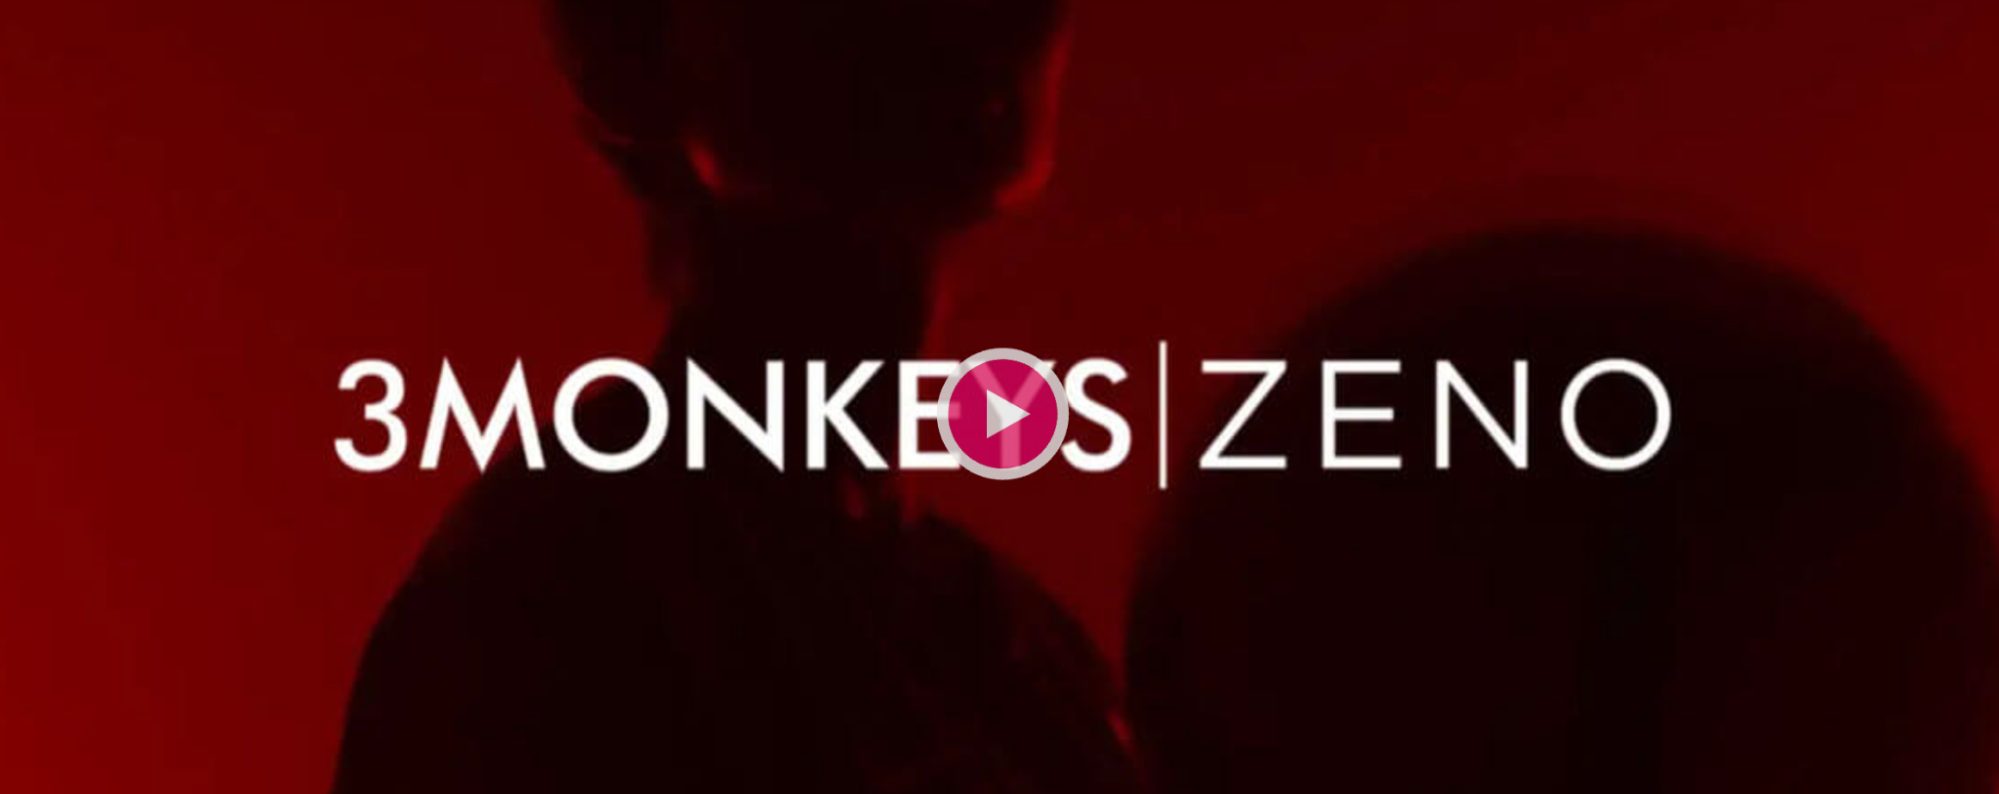 3 Monkeys | Zeno